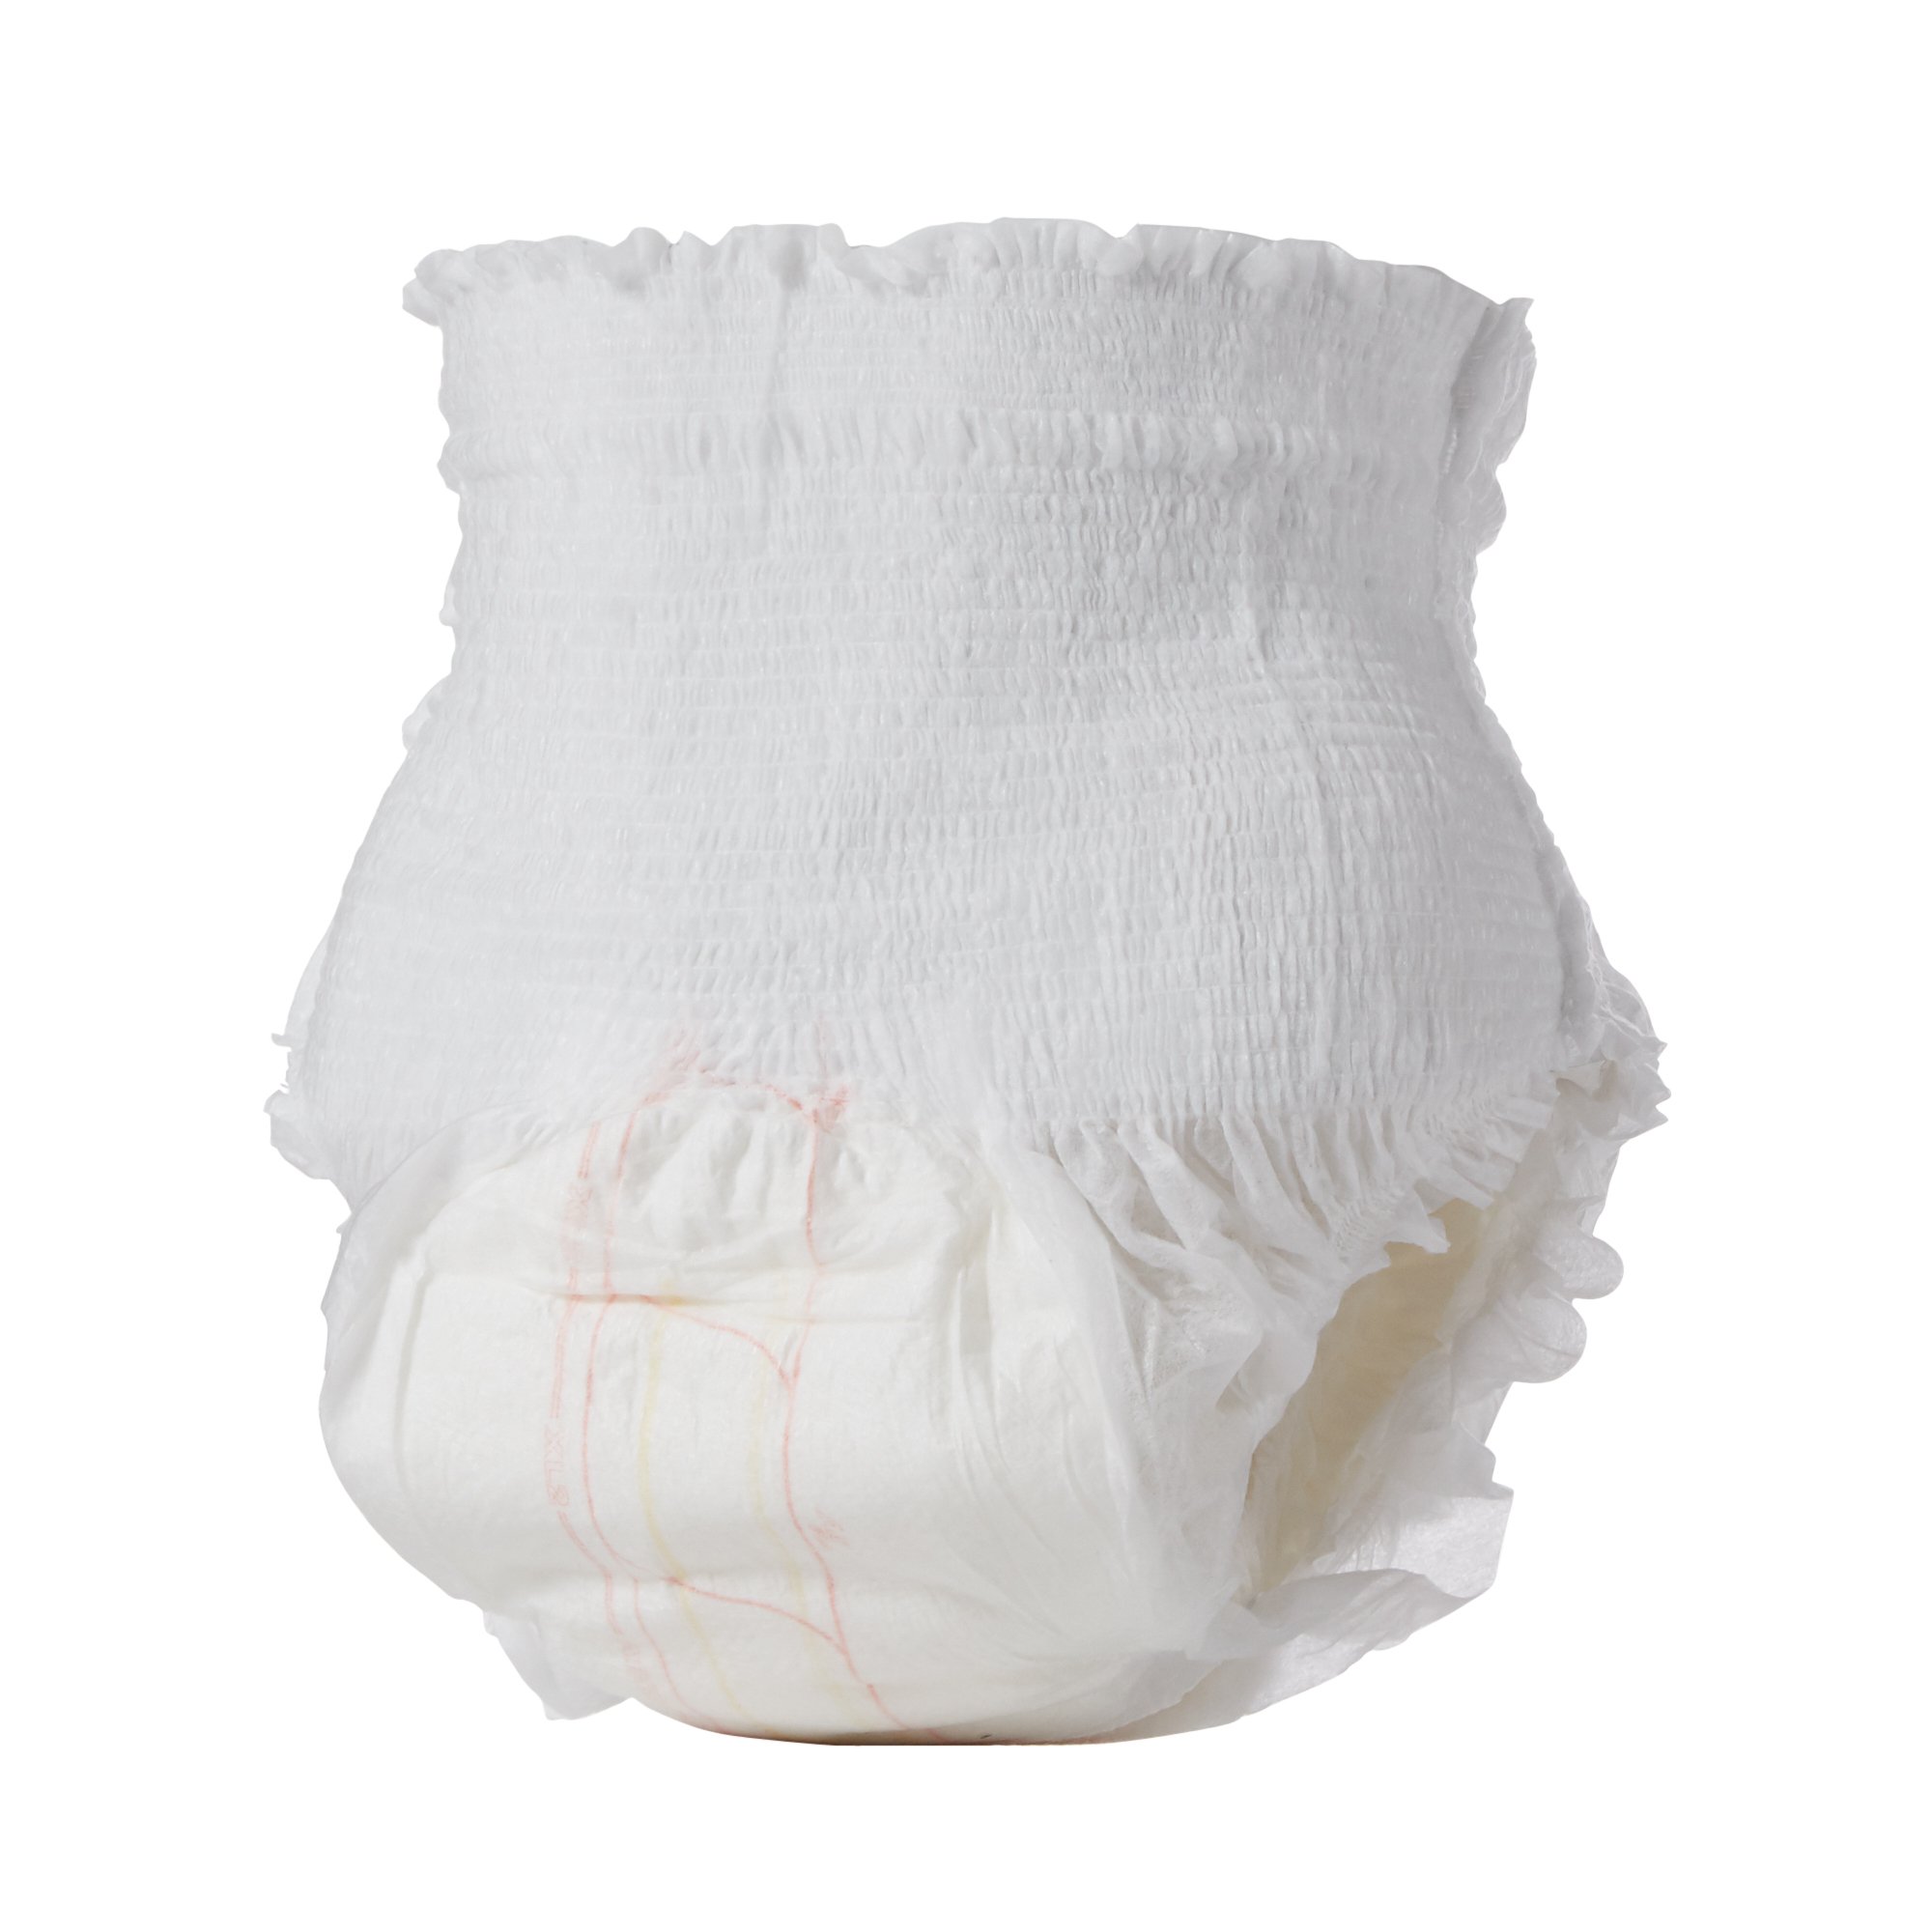 Abri-Flex™ Premium XL2 Absorbent Underwear, Extra Large